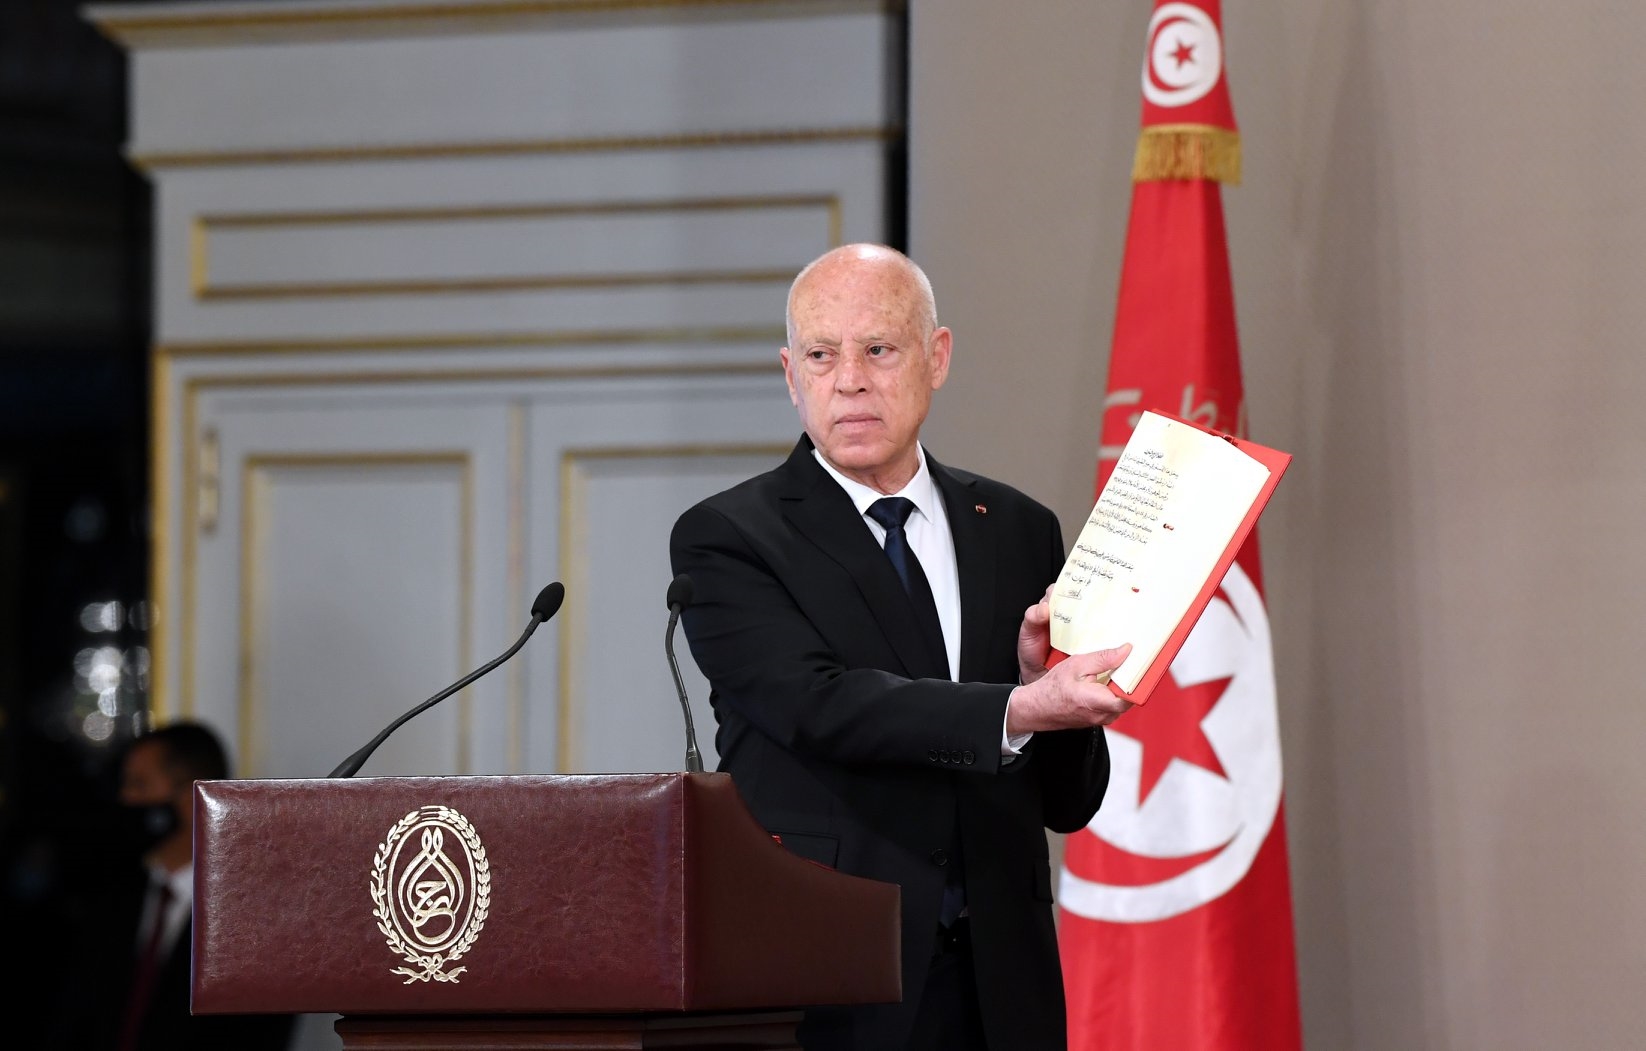 اليسار التونسي في ضوء انقلاب قيس سعيّد: هل يعيد التاريخ نفسه من جديد في تونس؟